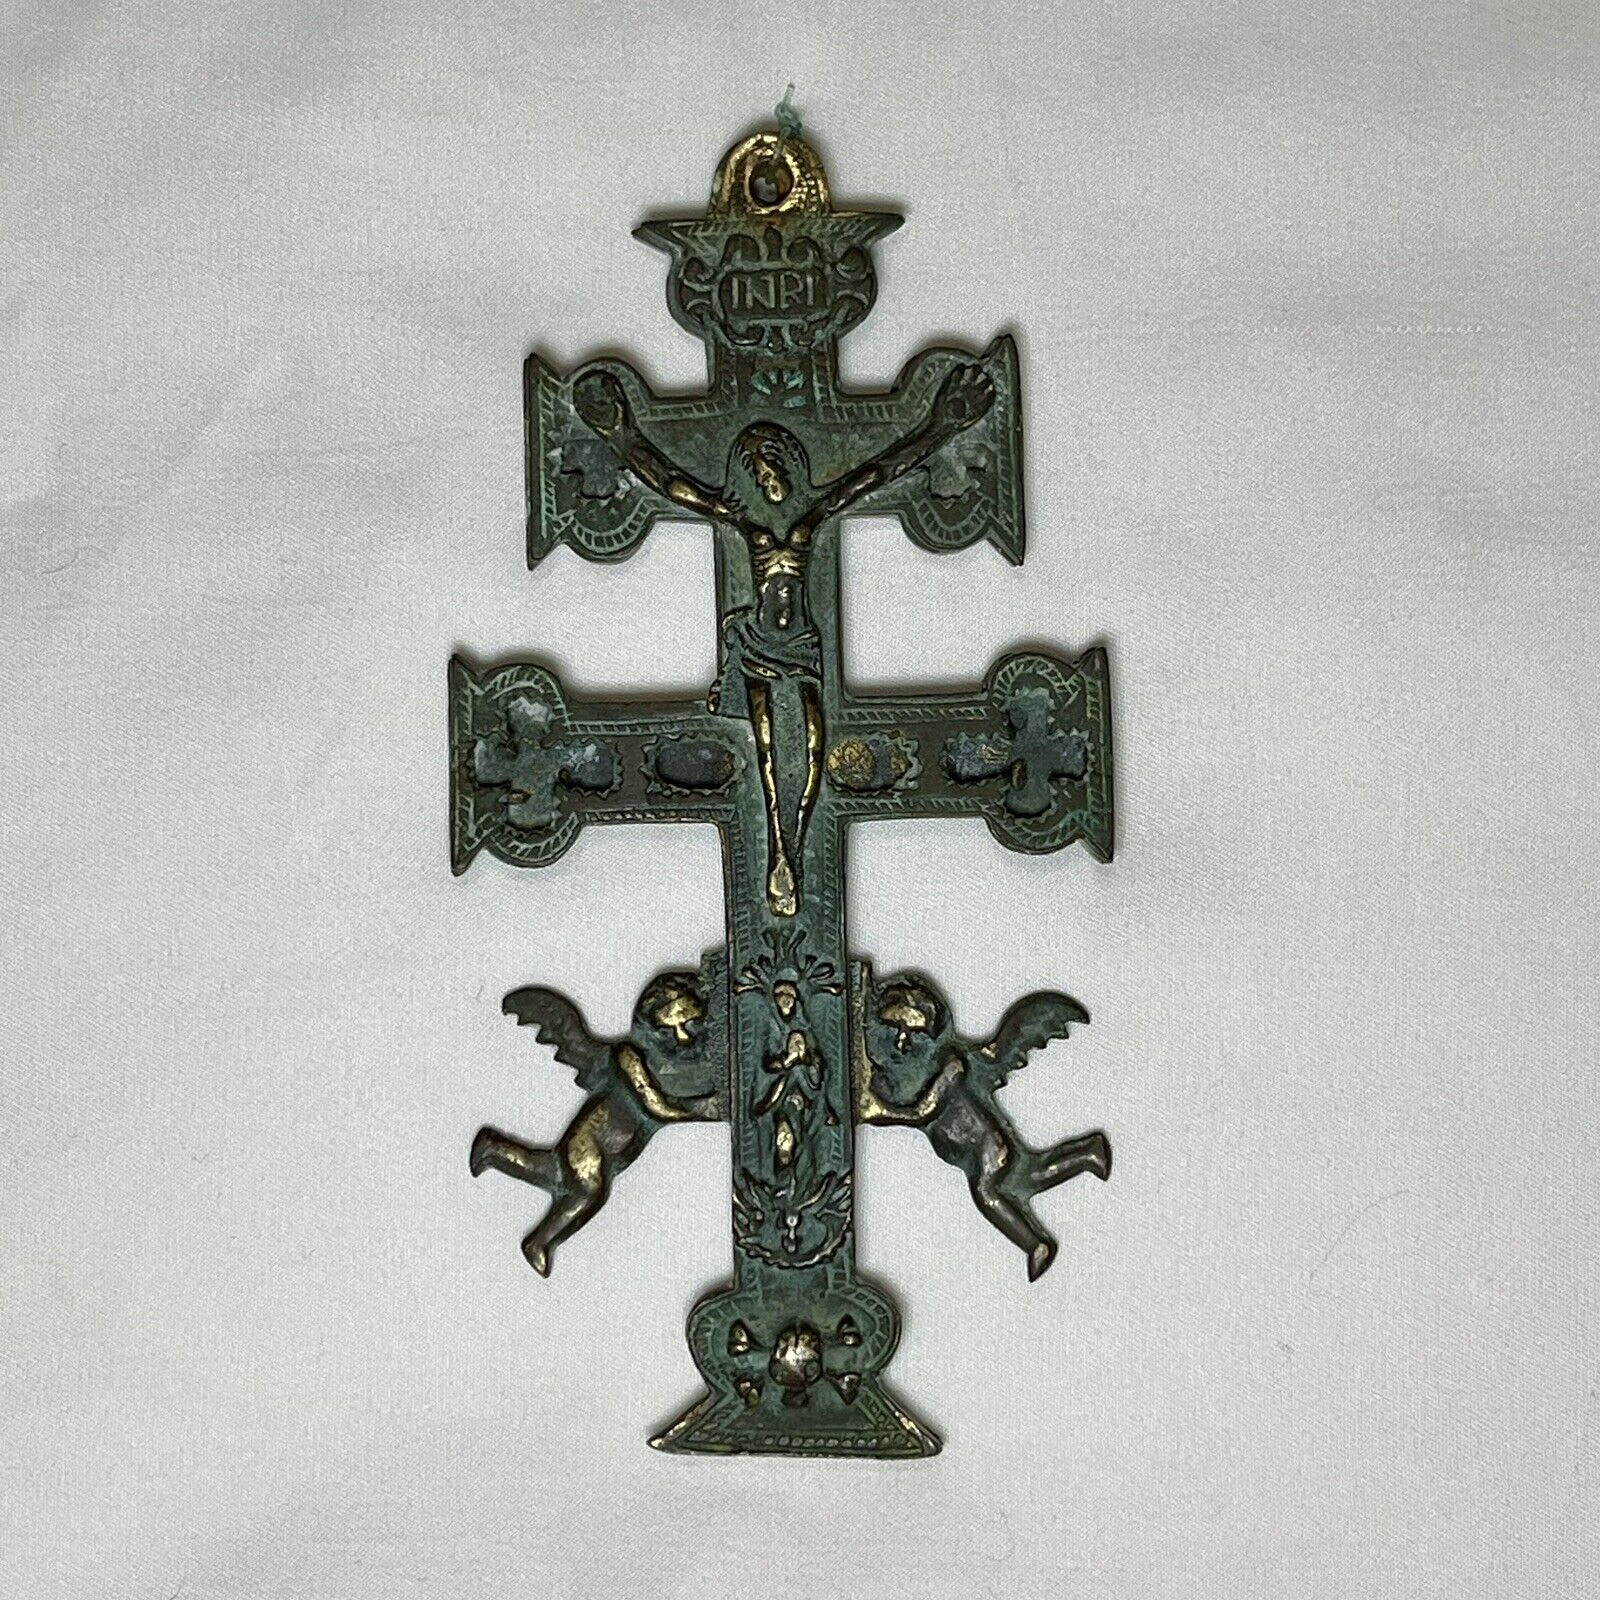 Antique Spanish Bronze Caravaca Cross Crucifix Pectoral  c.1600s - 1700s